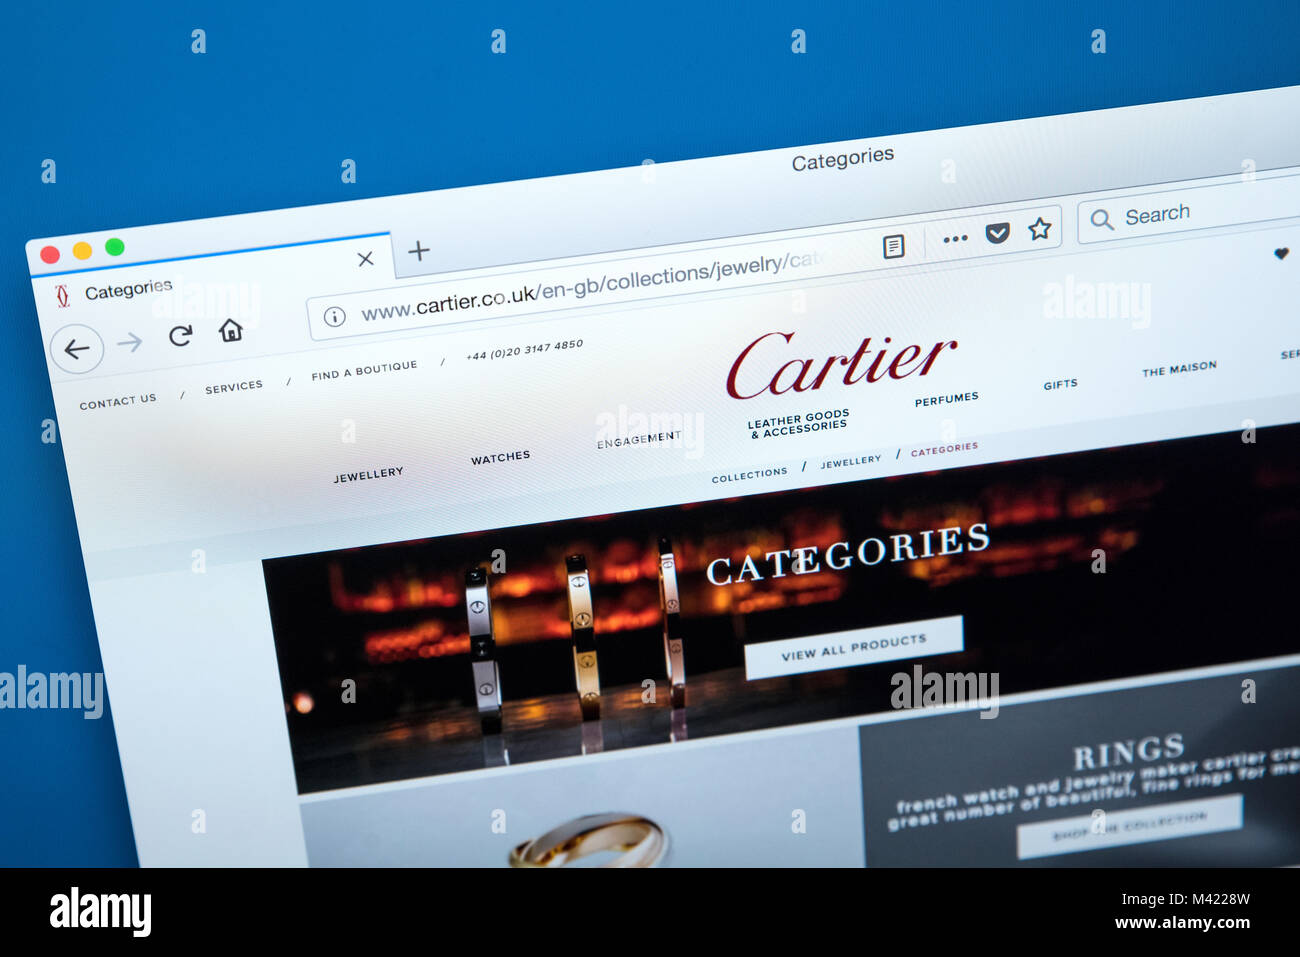 cartier complaints website